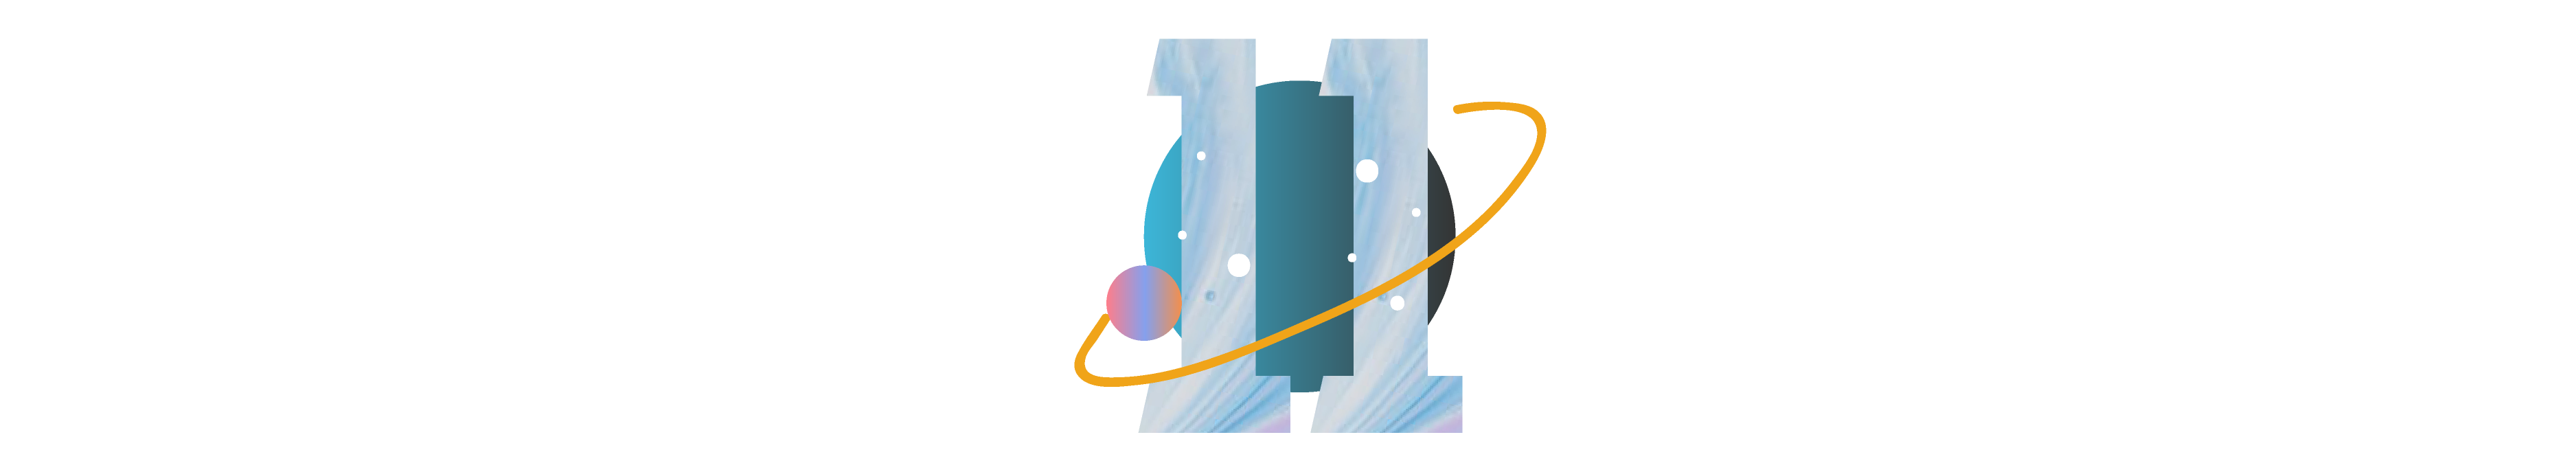 2021年6月十二星座塔罗运势,2021年运势最好的星座  第23张